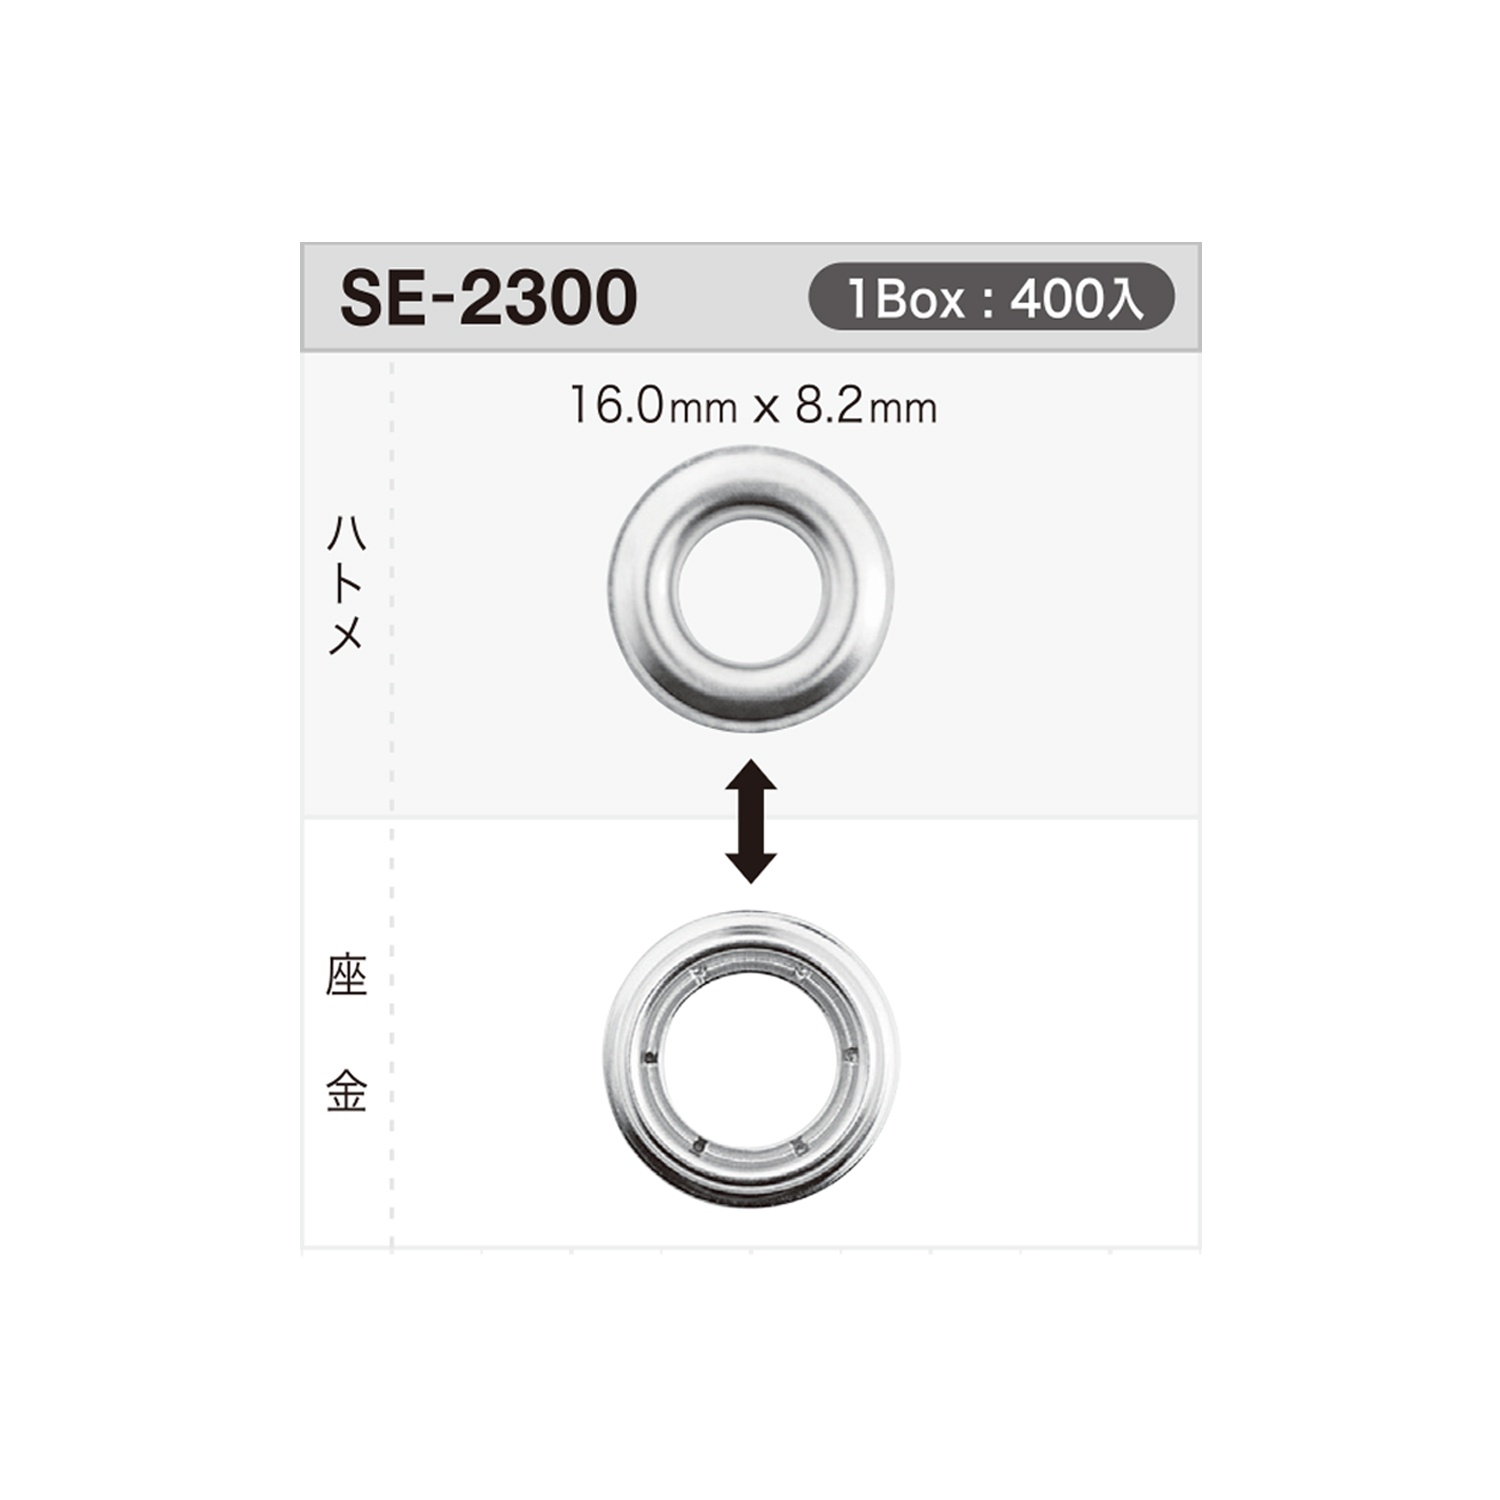 SE2300 Ösenscheibe 16 Mm X 8,2 Mm * Kompatibel Mit Nadeldetektoren[Druckverschluss/Ösenscheibe] Morito